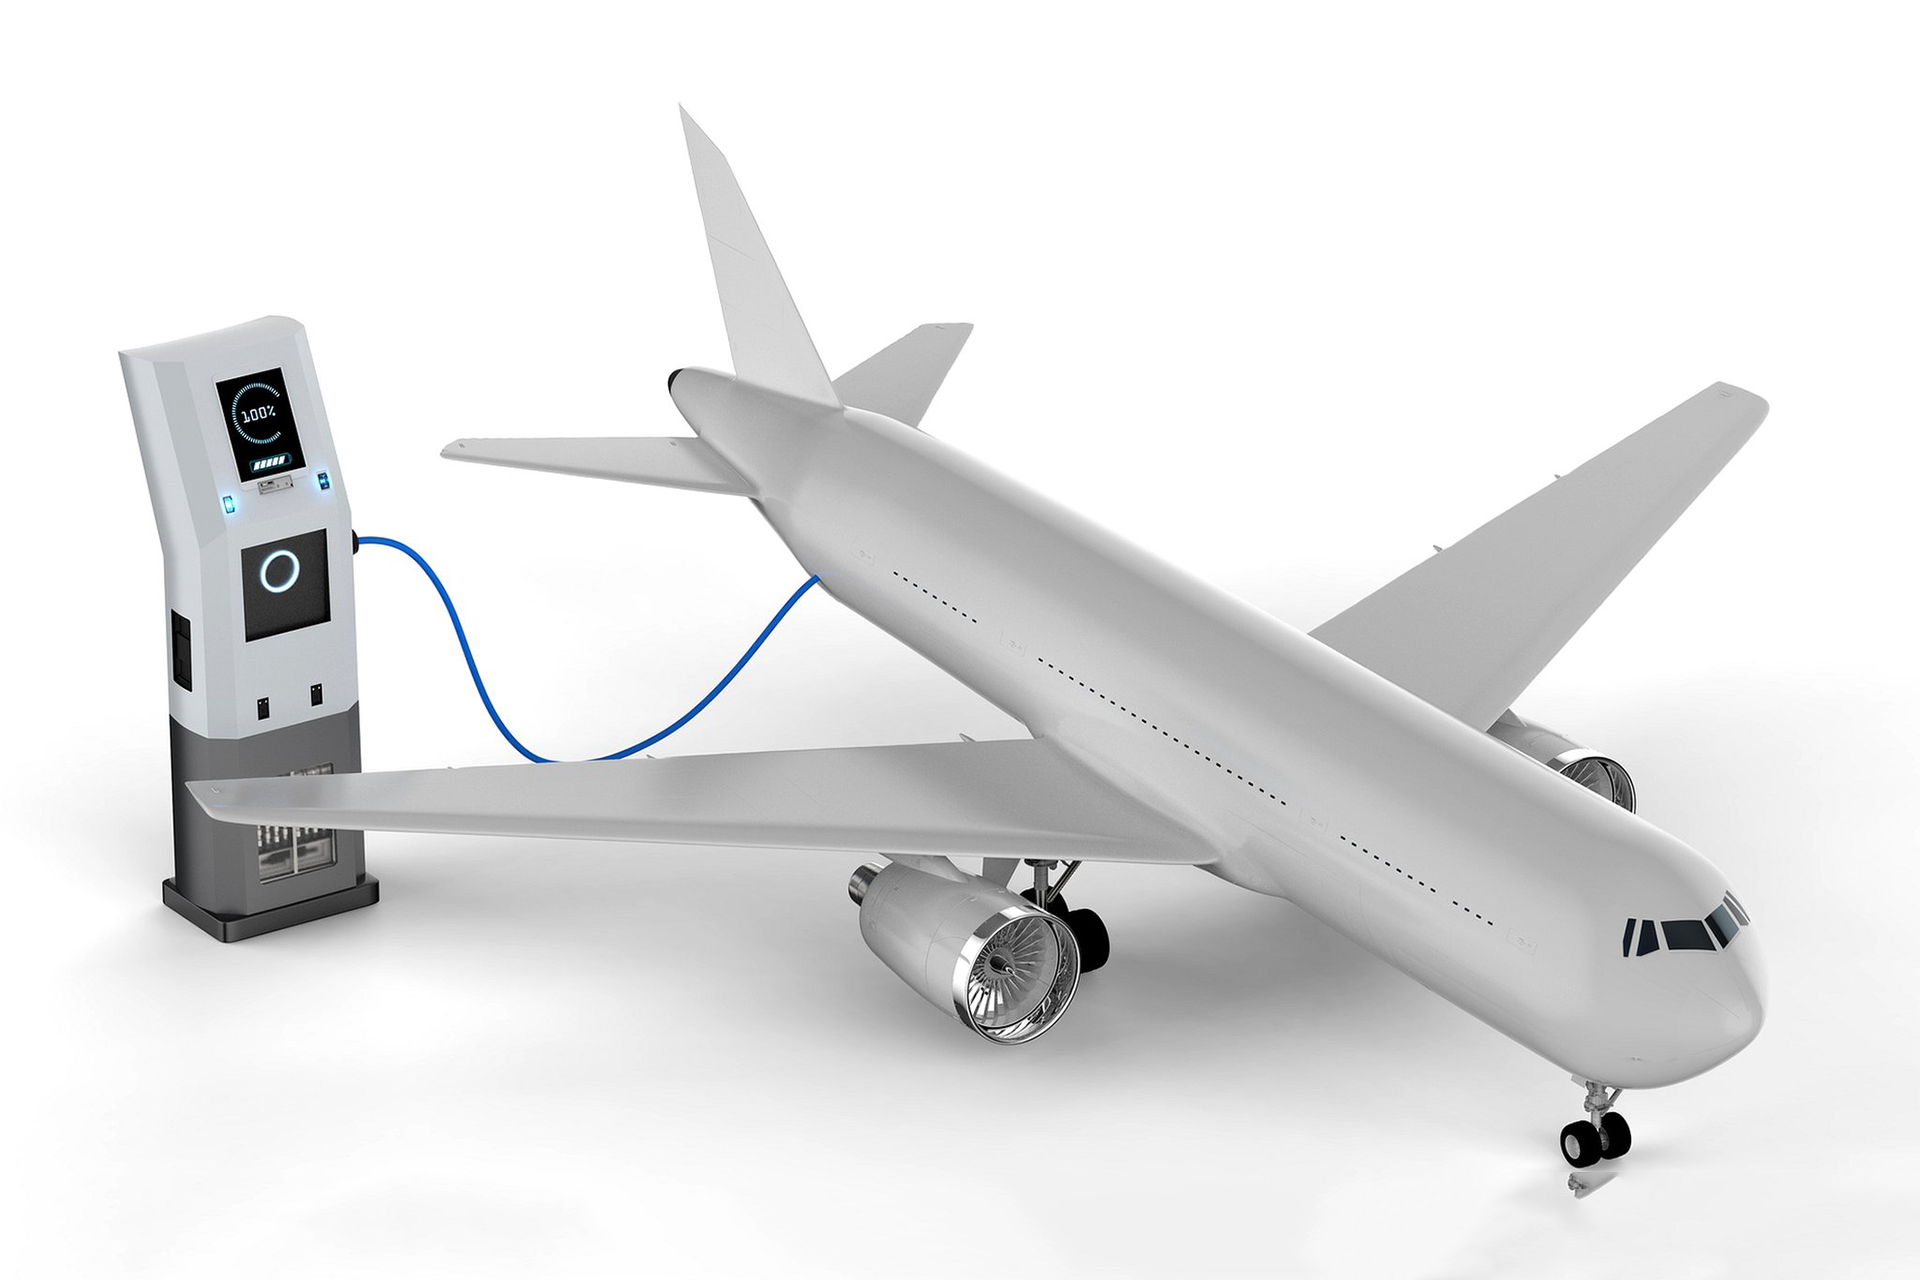 Bateria de estado semi-sólido da CATL pode tornar viável a aviação elétrica comercial